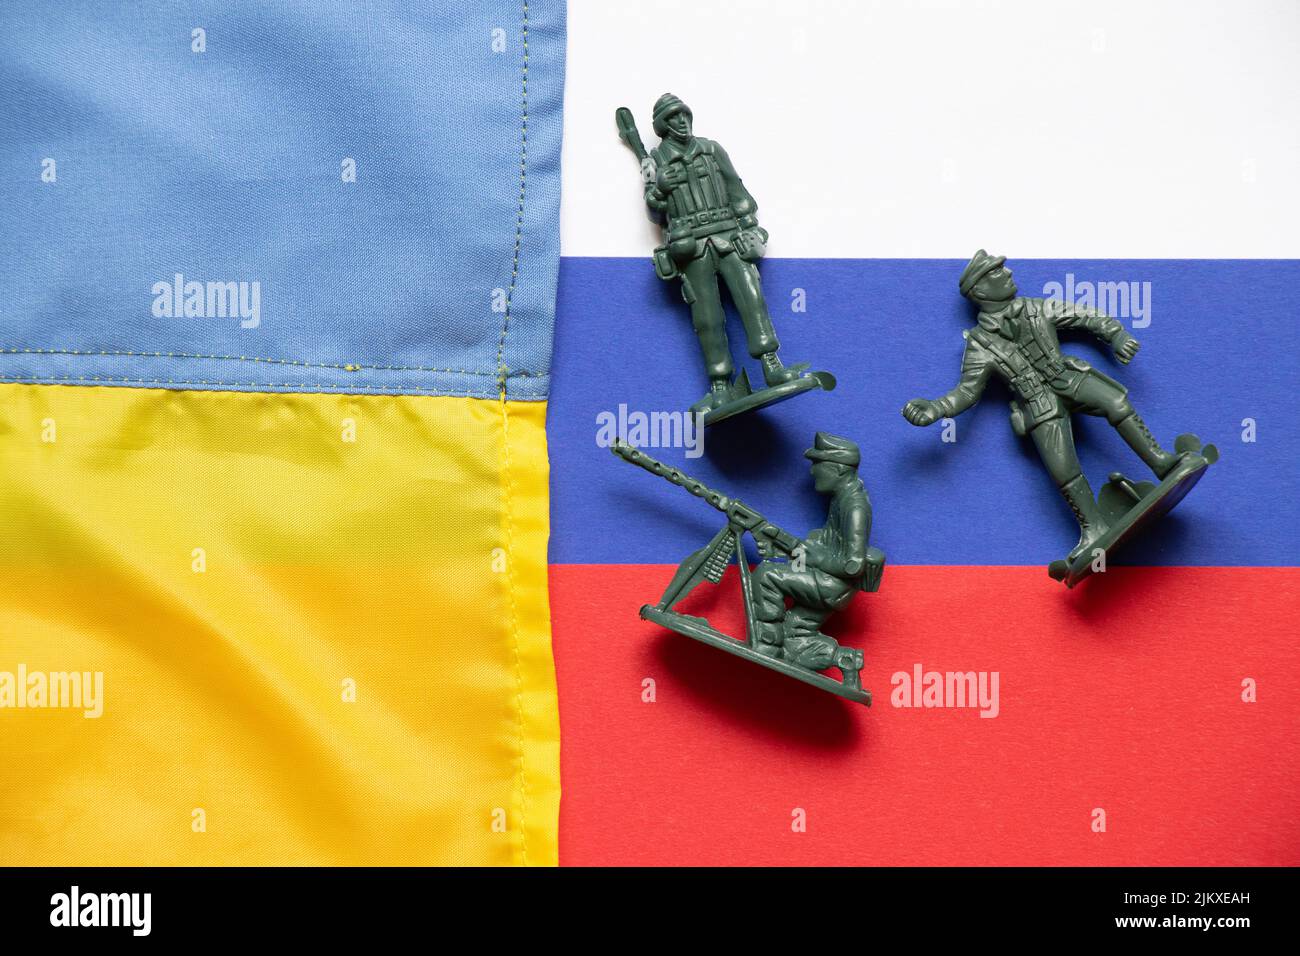 Die Flagge der Ukraine und Russland und auf den russischen Flaggen sind verstreute Plastiksoldaten für Kinder, der ukrainisch-russische Krieg Stockfoto